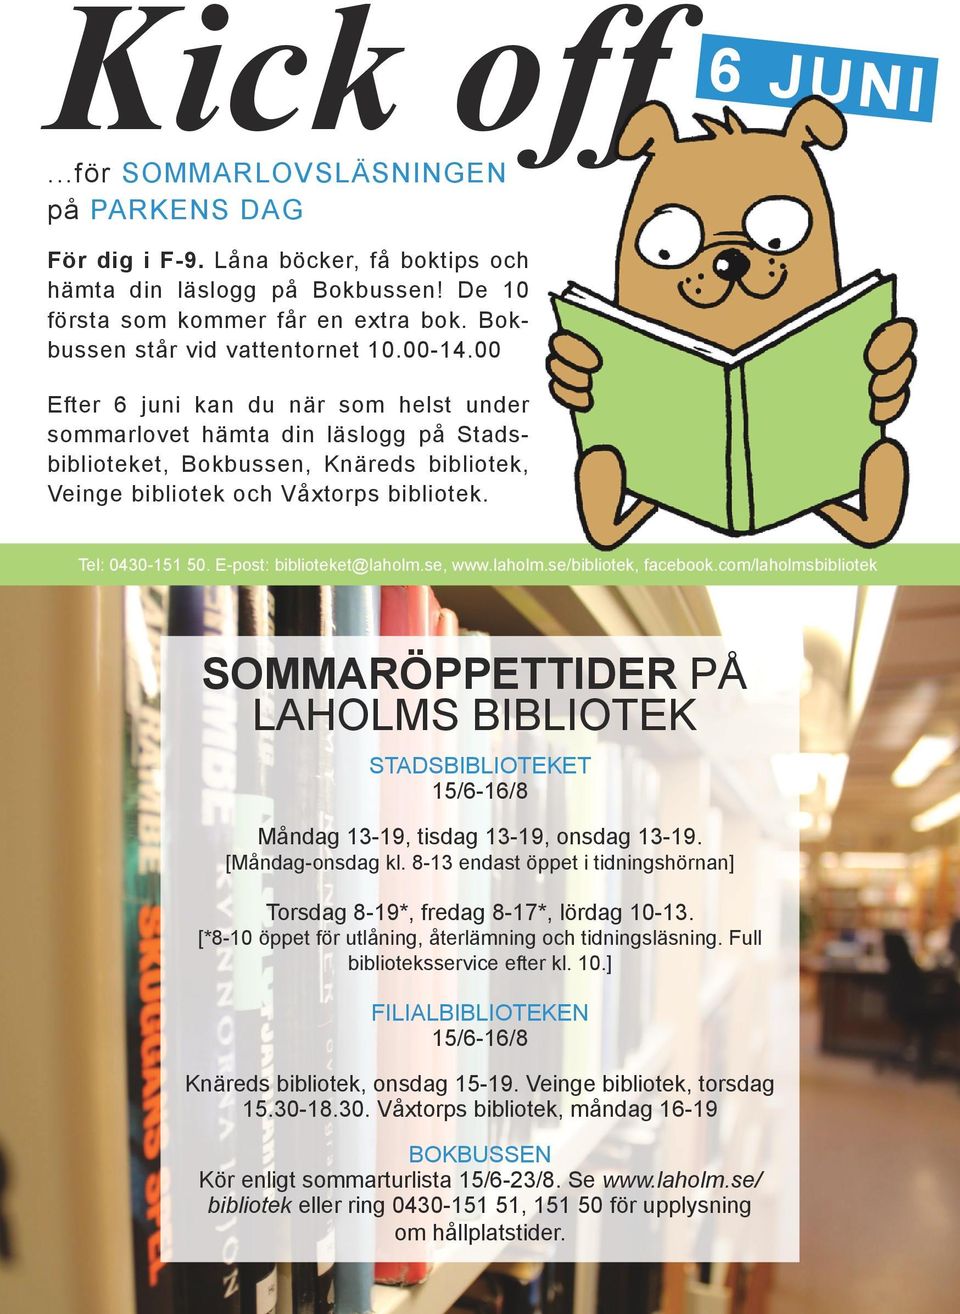 00 Efter 6 juni kan du när som helst under sommarlovet hämta din läslogg på Stadsbiblioteket, Bokbussen, Knäreds bibliotek, Veinge bibliotek och Våxtorps bibliotek. Tel: 0430-151 50.